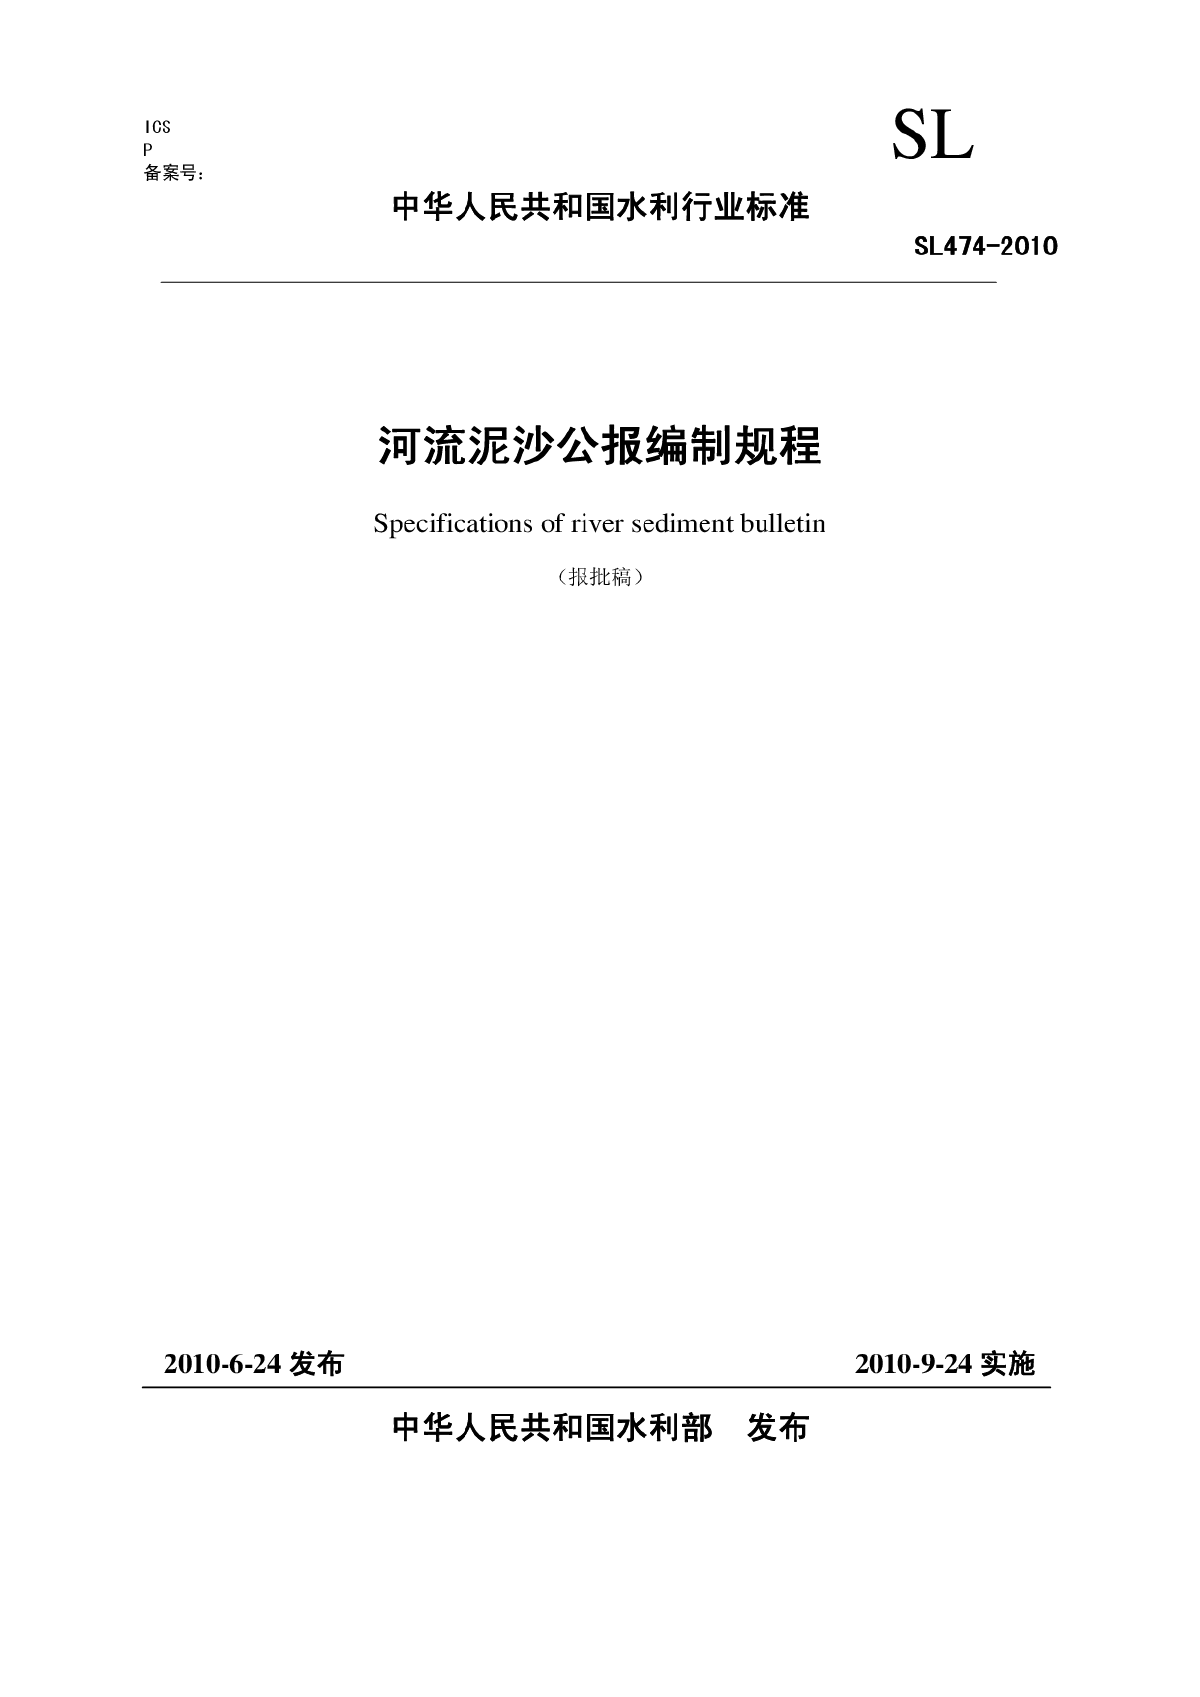 2010 河流泥沙公报编制规程(报批稿)